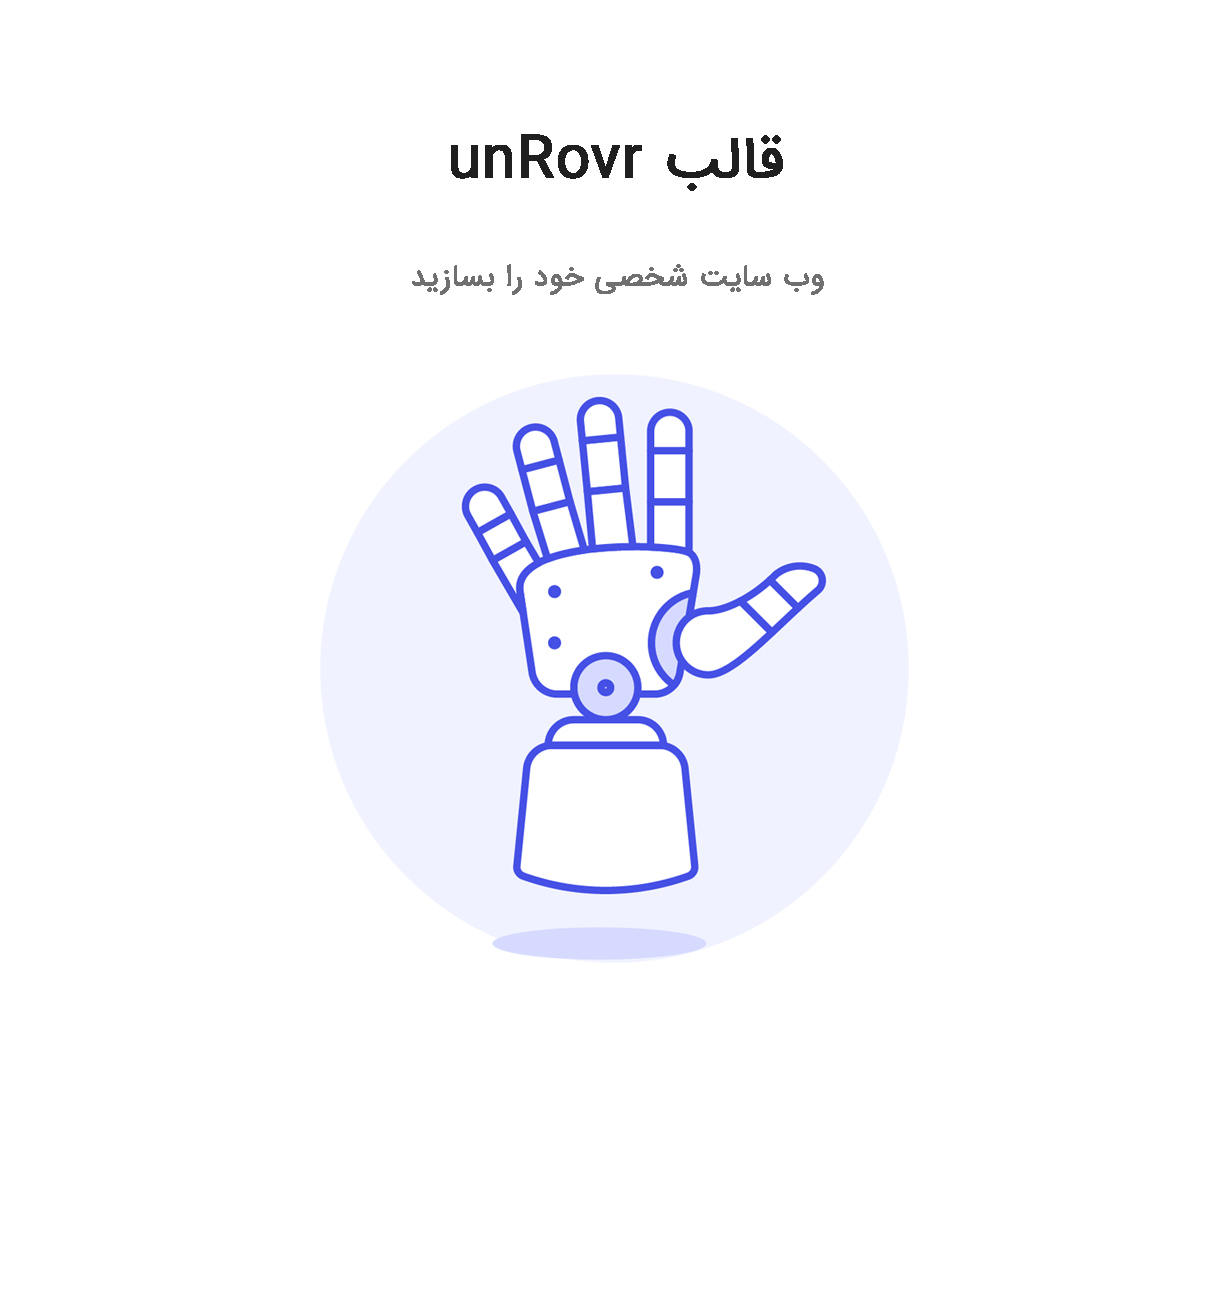 قالب UnRovr | قالب وردپرس وبسایت شخصی و رزومه